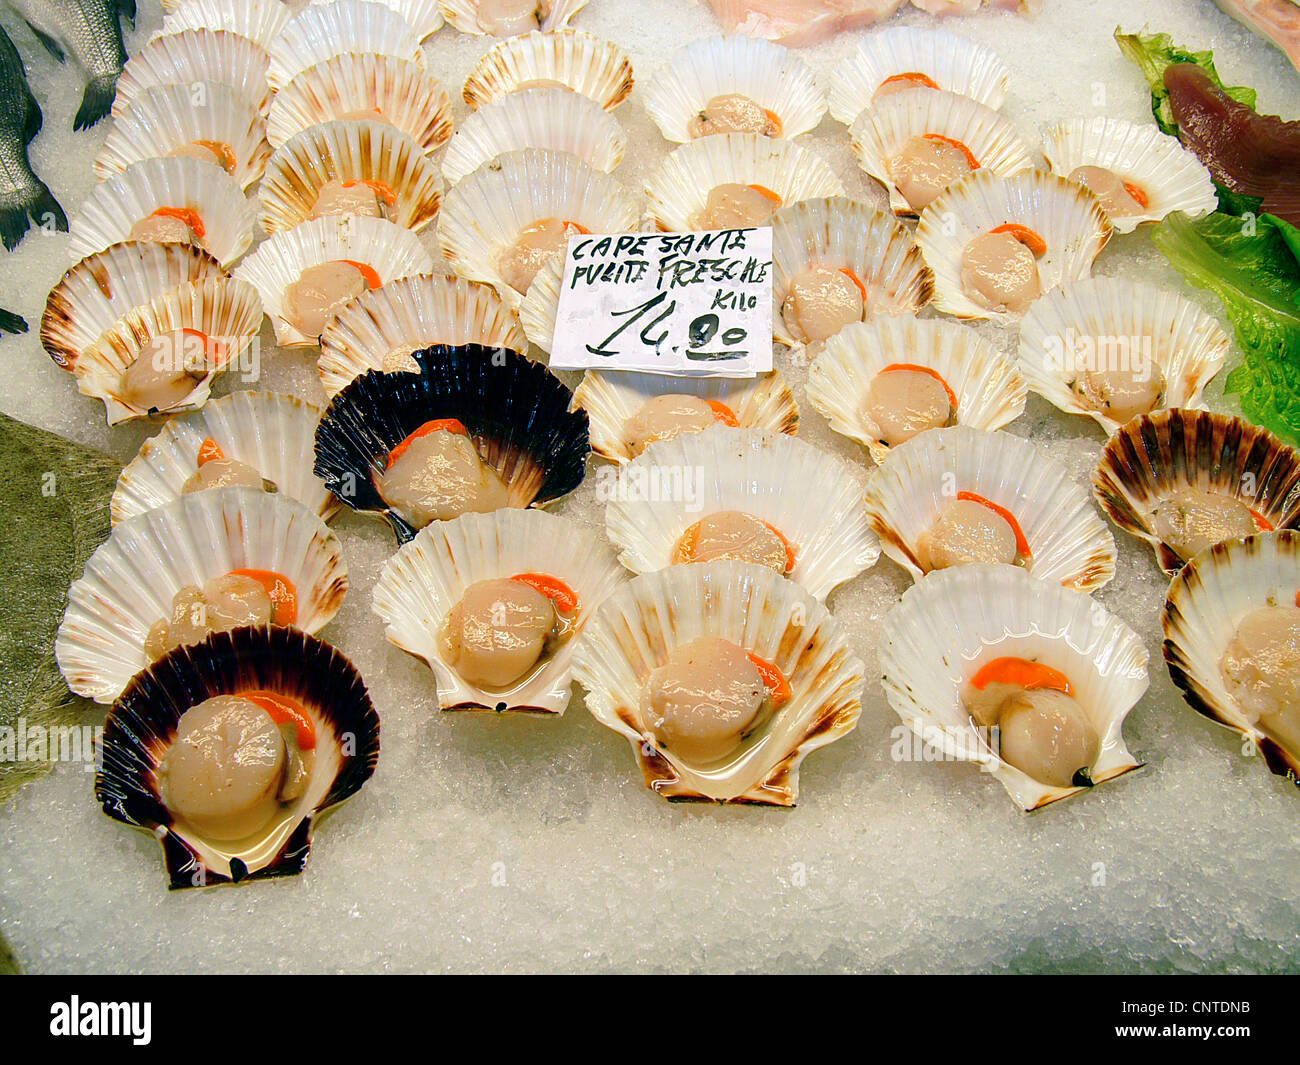 Les coquilles fraîches sur le marché du Rialto, Venise, Italie Banque D'Images